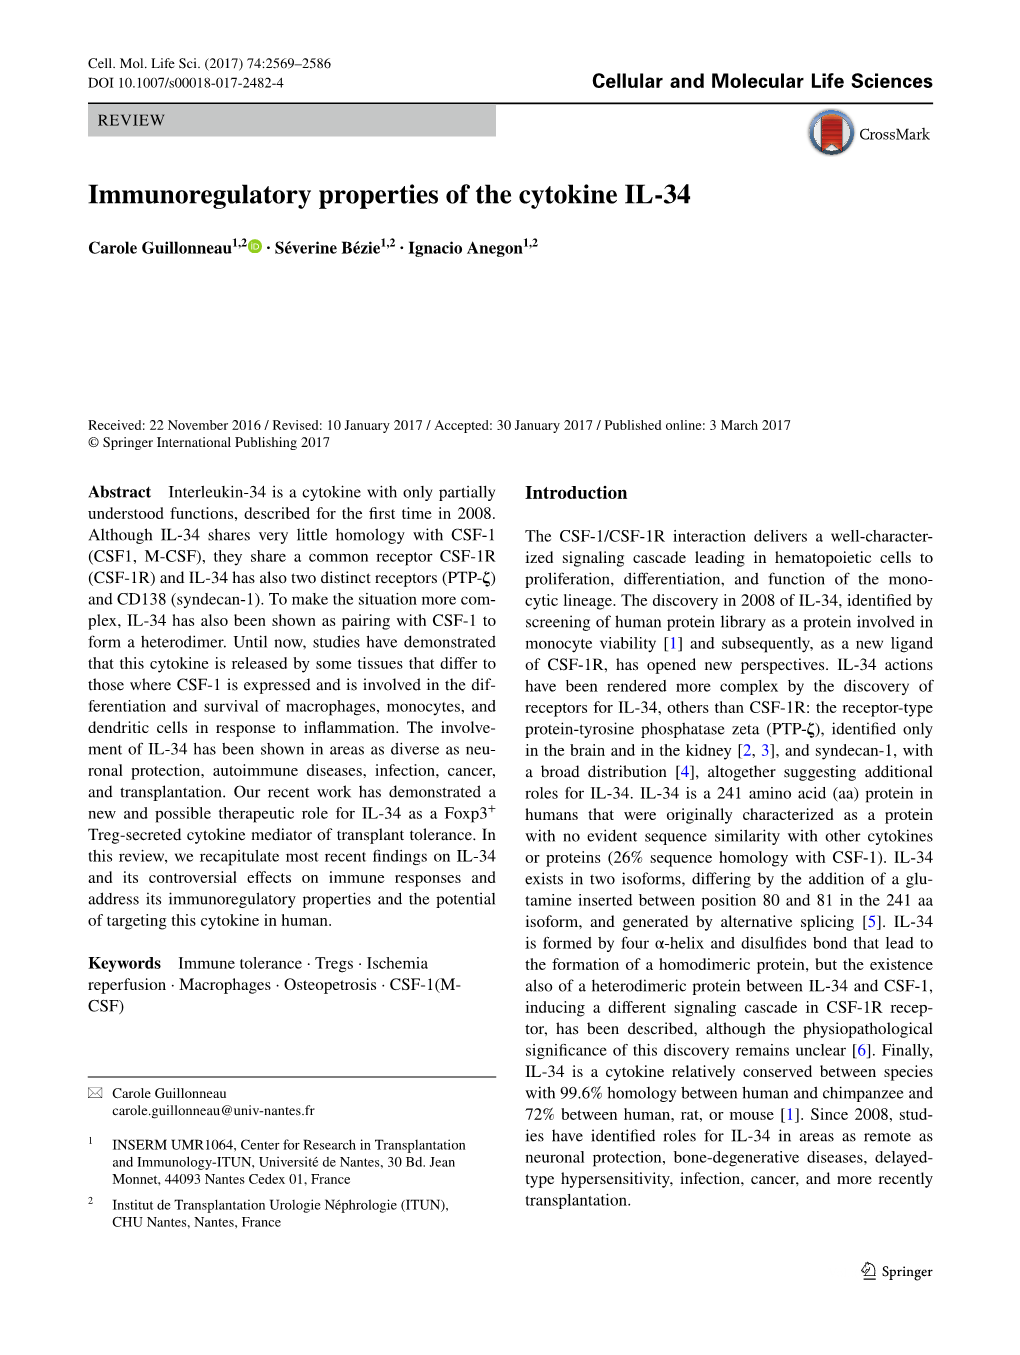 Immunoregulatory Properties of the Cytokine IL-34